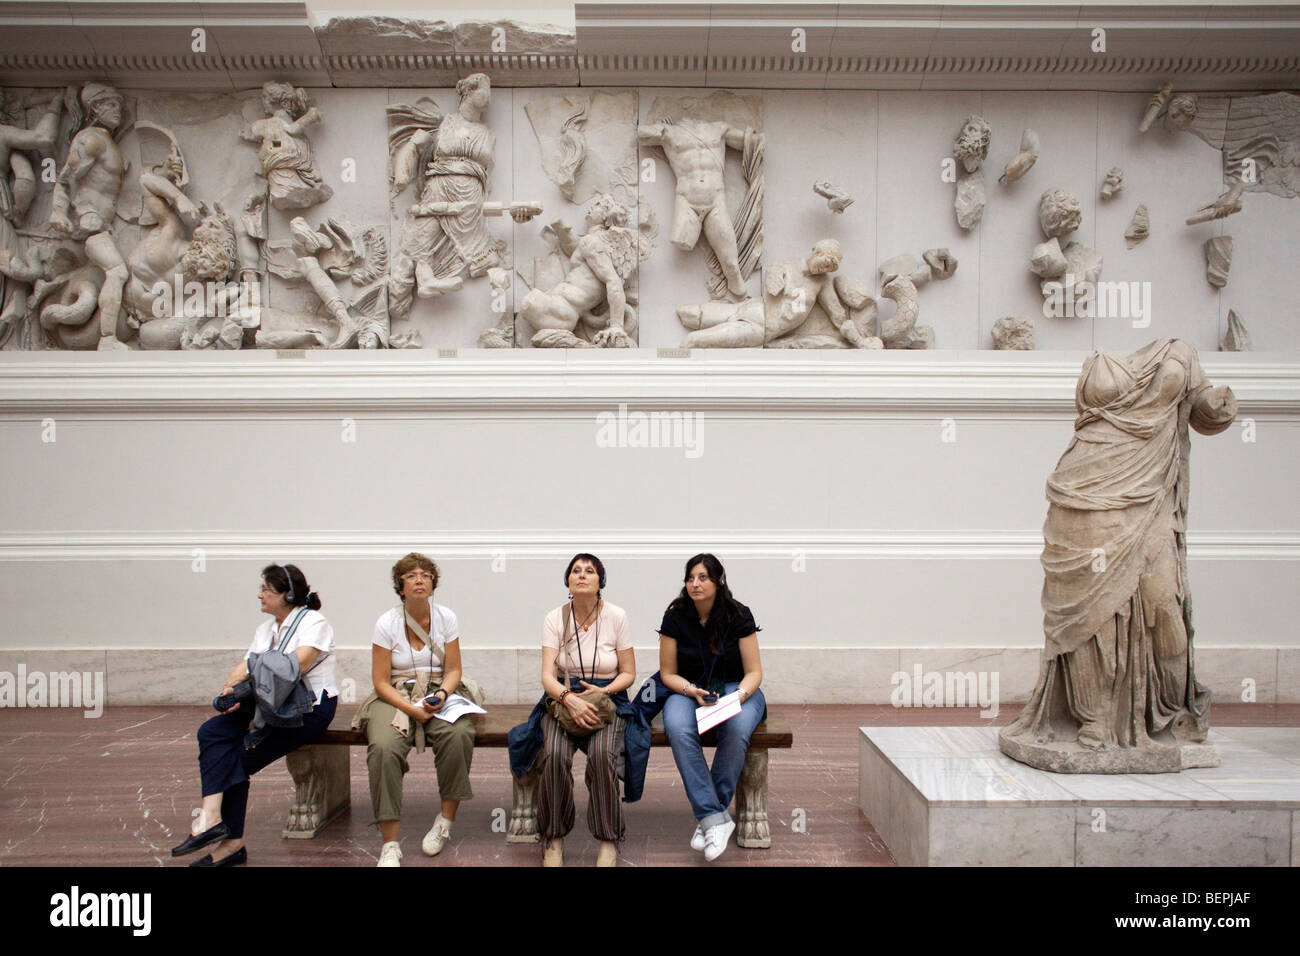 Fries mit hellenistischen Skulpturen in der Pergamon-Altar Zimmer, Pergamon Museum, Berlin, Deutschland Stockfoto